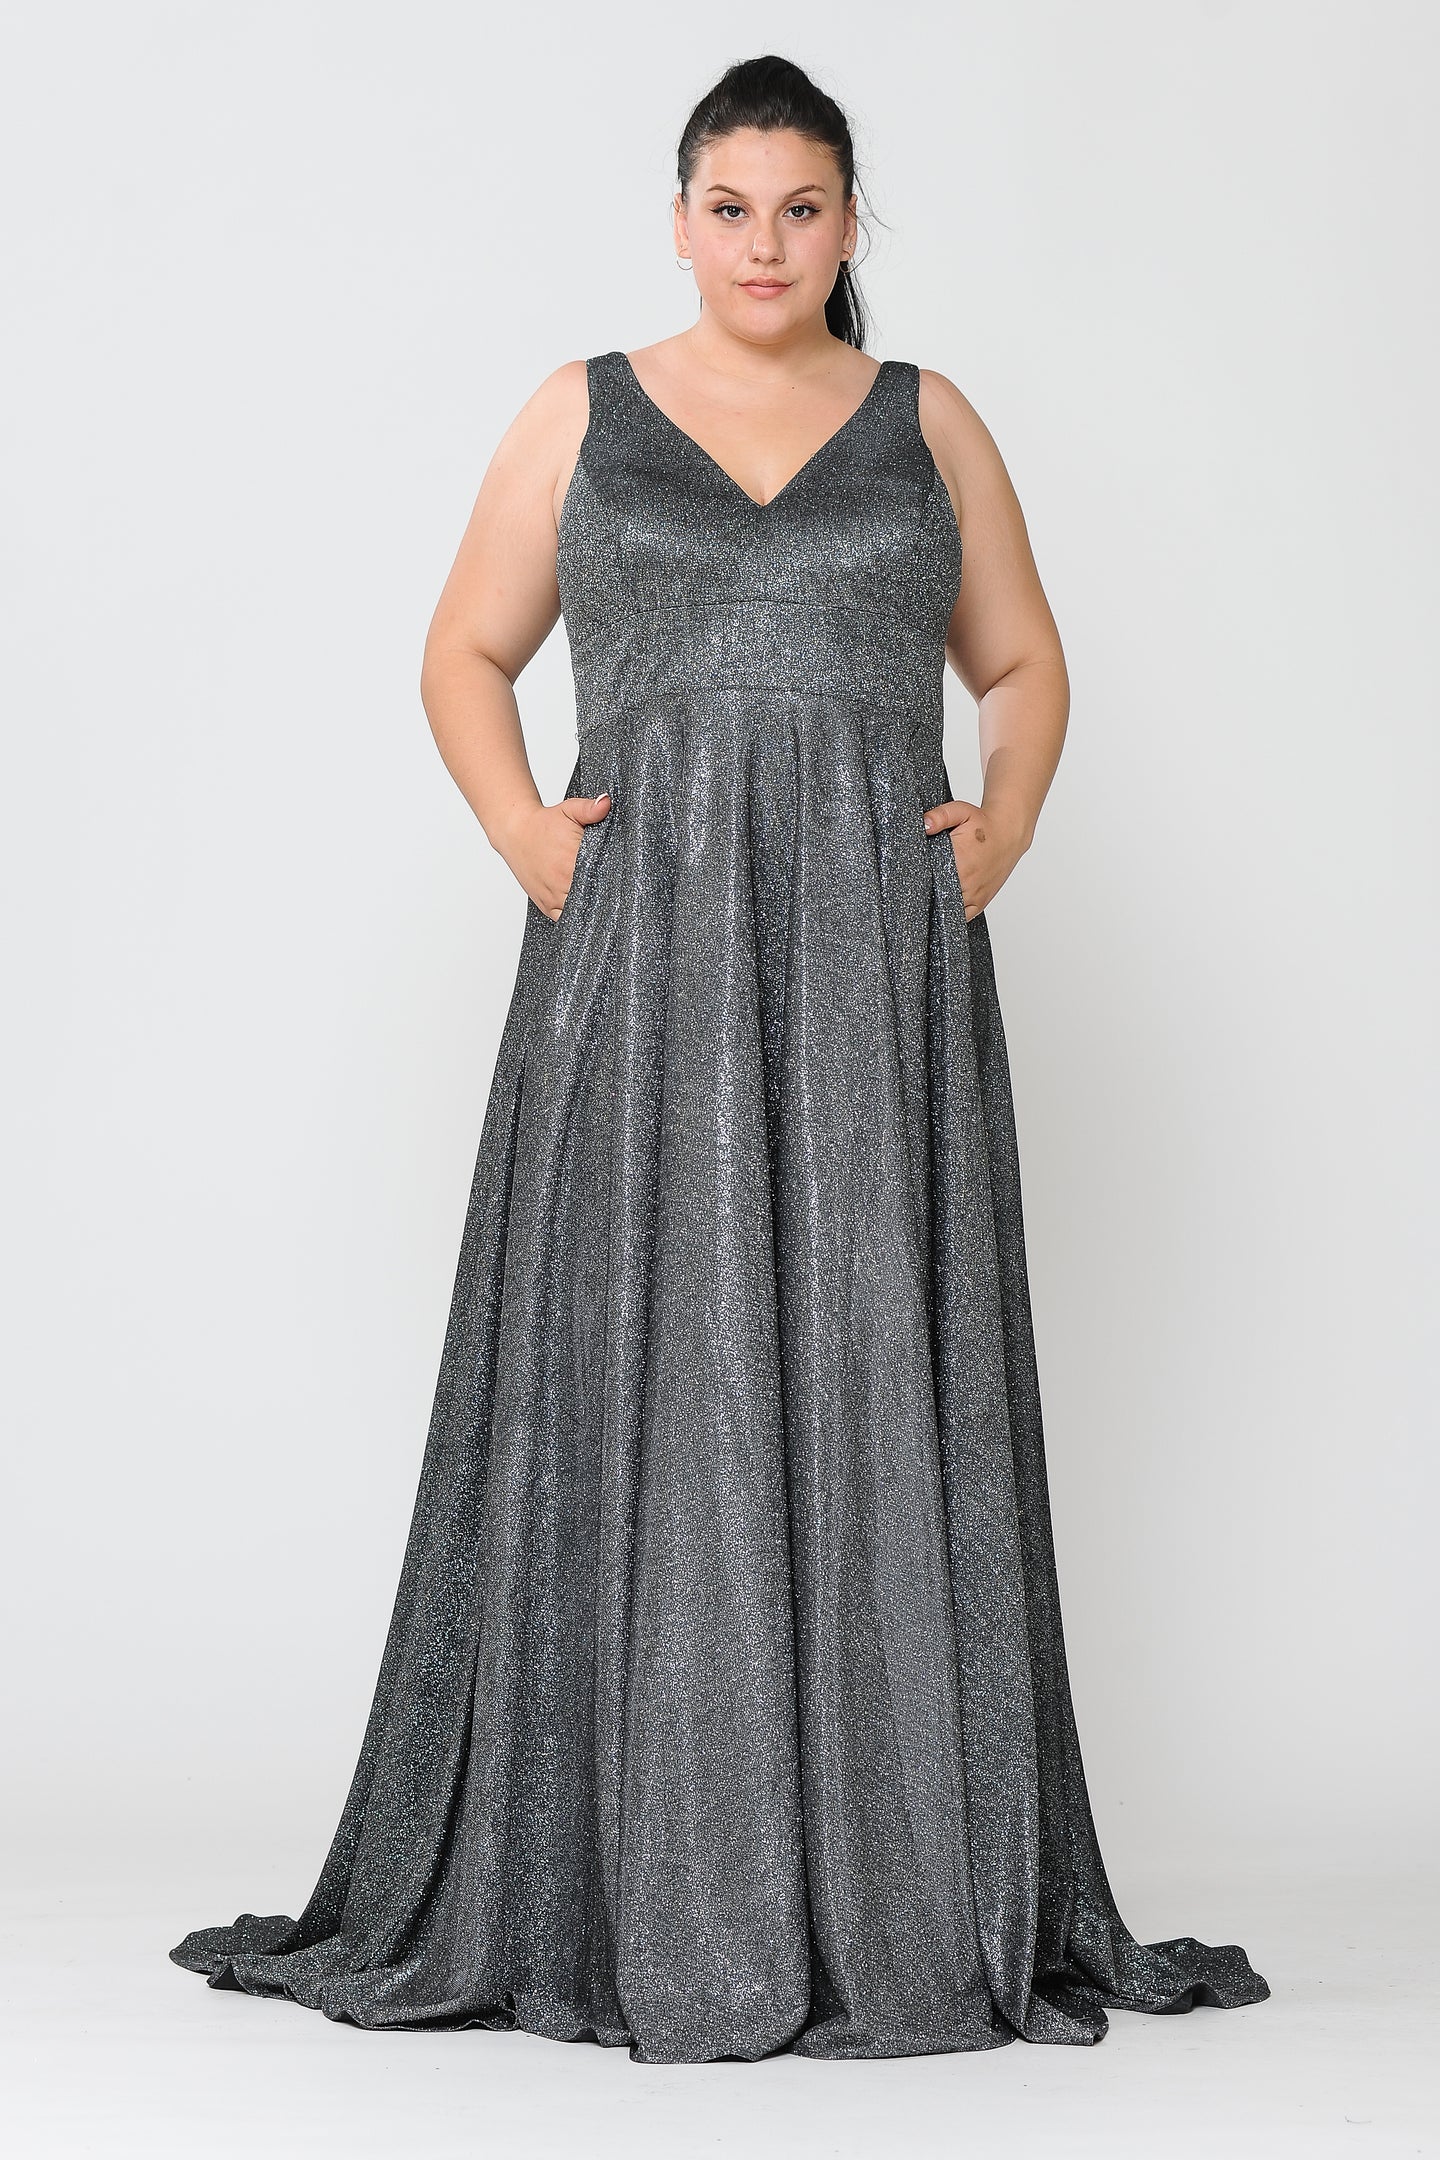 Special Occasion Plus Size Dress - LAYW1036 - BLACK - LA Merchandise